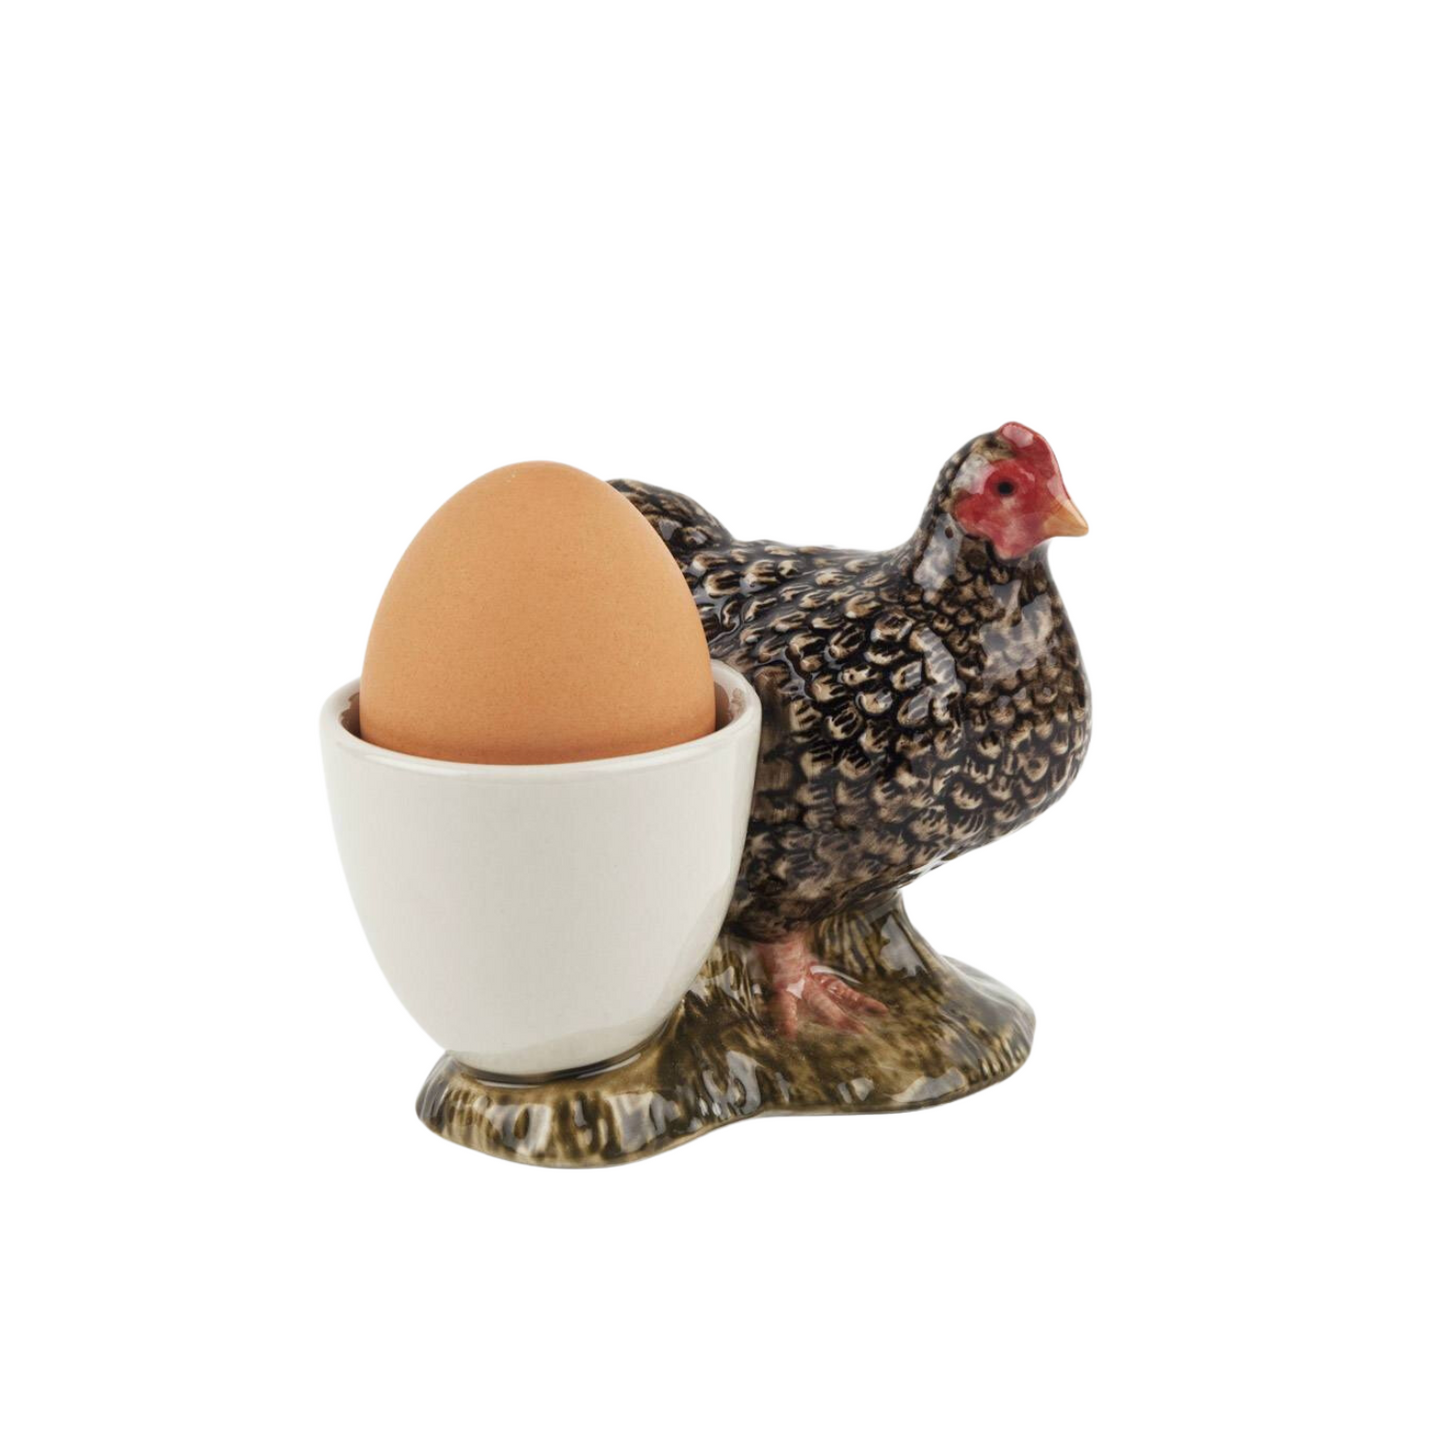 Marran Chicken Egg Cup